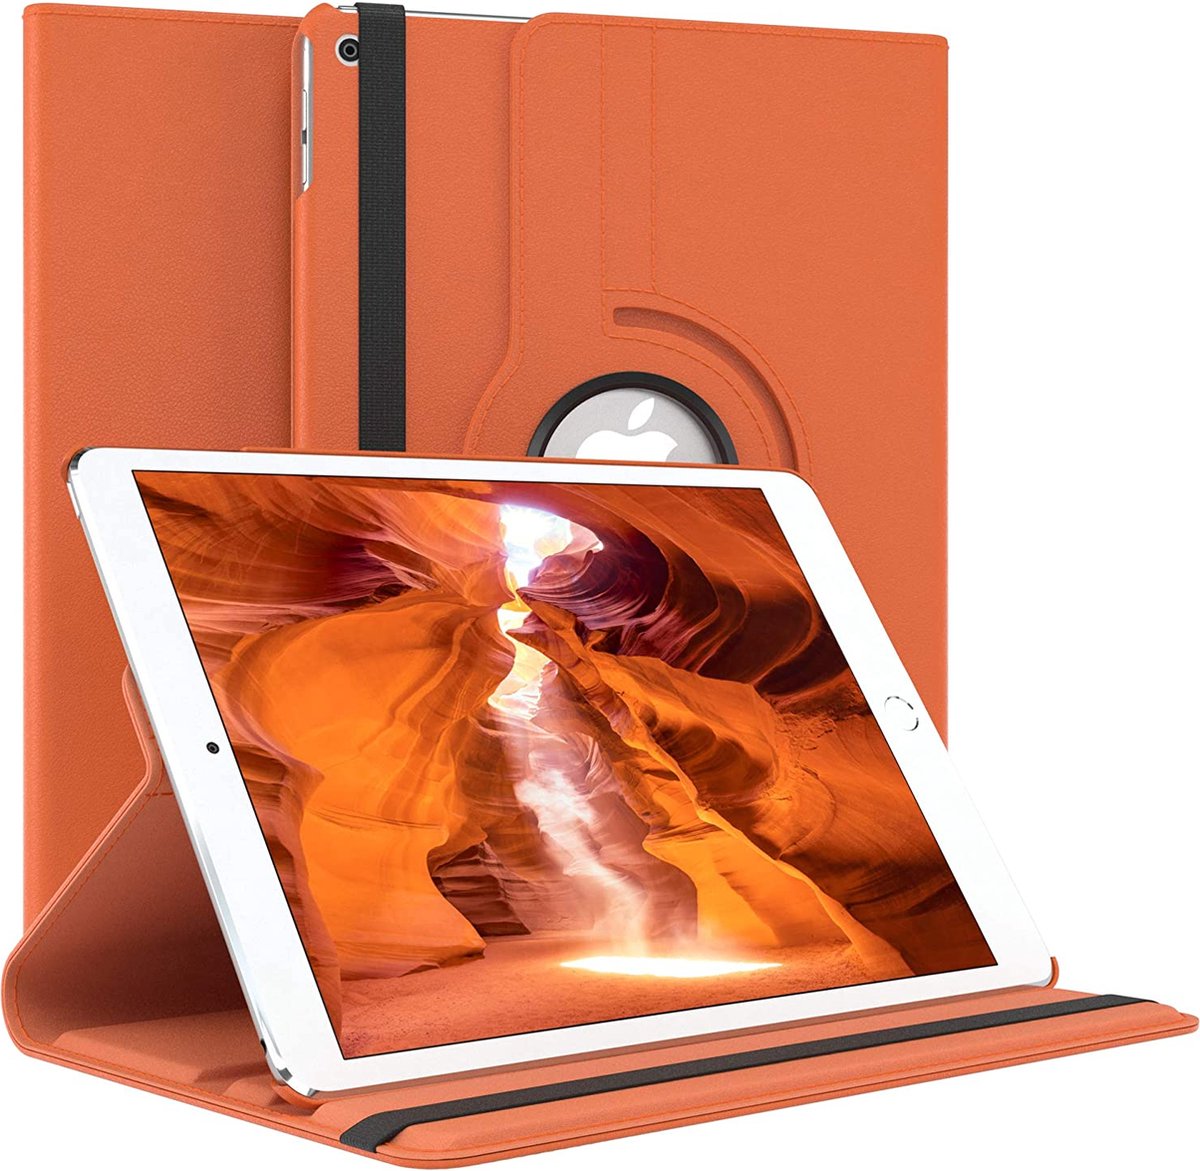 Draaibare iPad Air Hoes - iPad Air 1 (9.7 inch)) Hoesje Oranje - Hoes voor Apple iPad Air 1e Generatie (9.7 inch) - Eco-Leer - Volledige Bescherming tot 2 meter